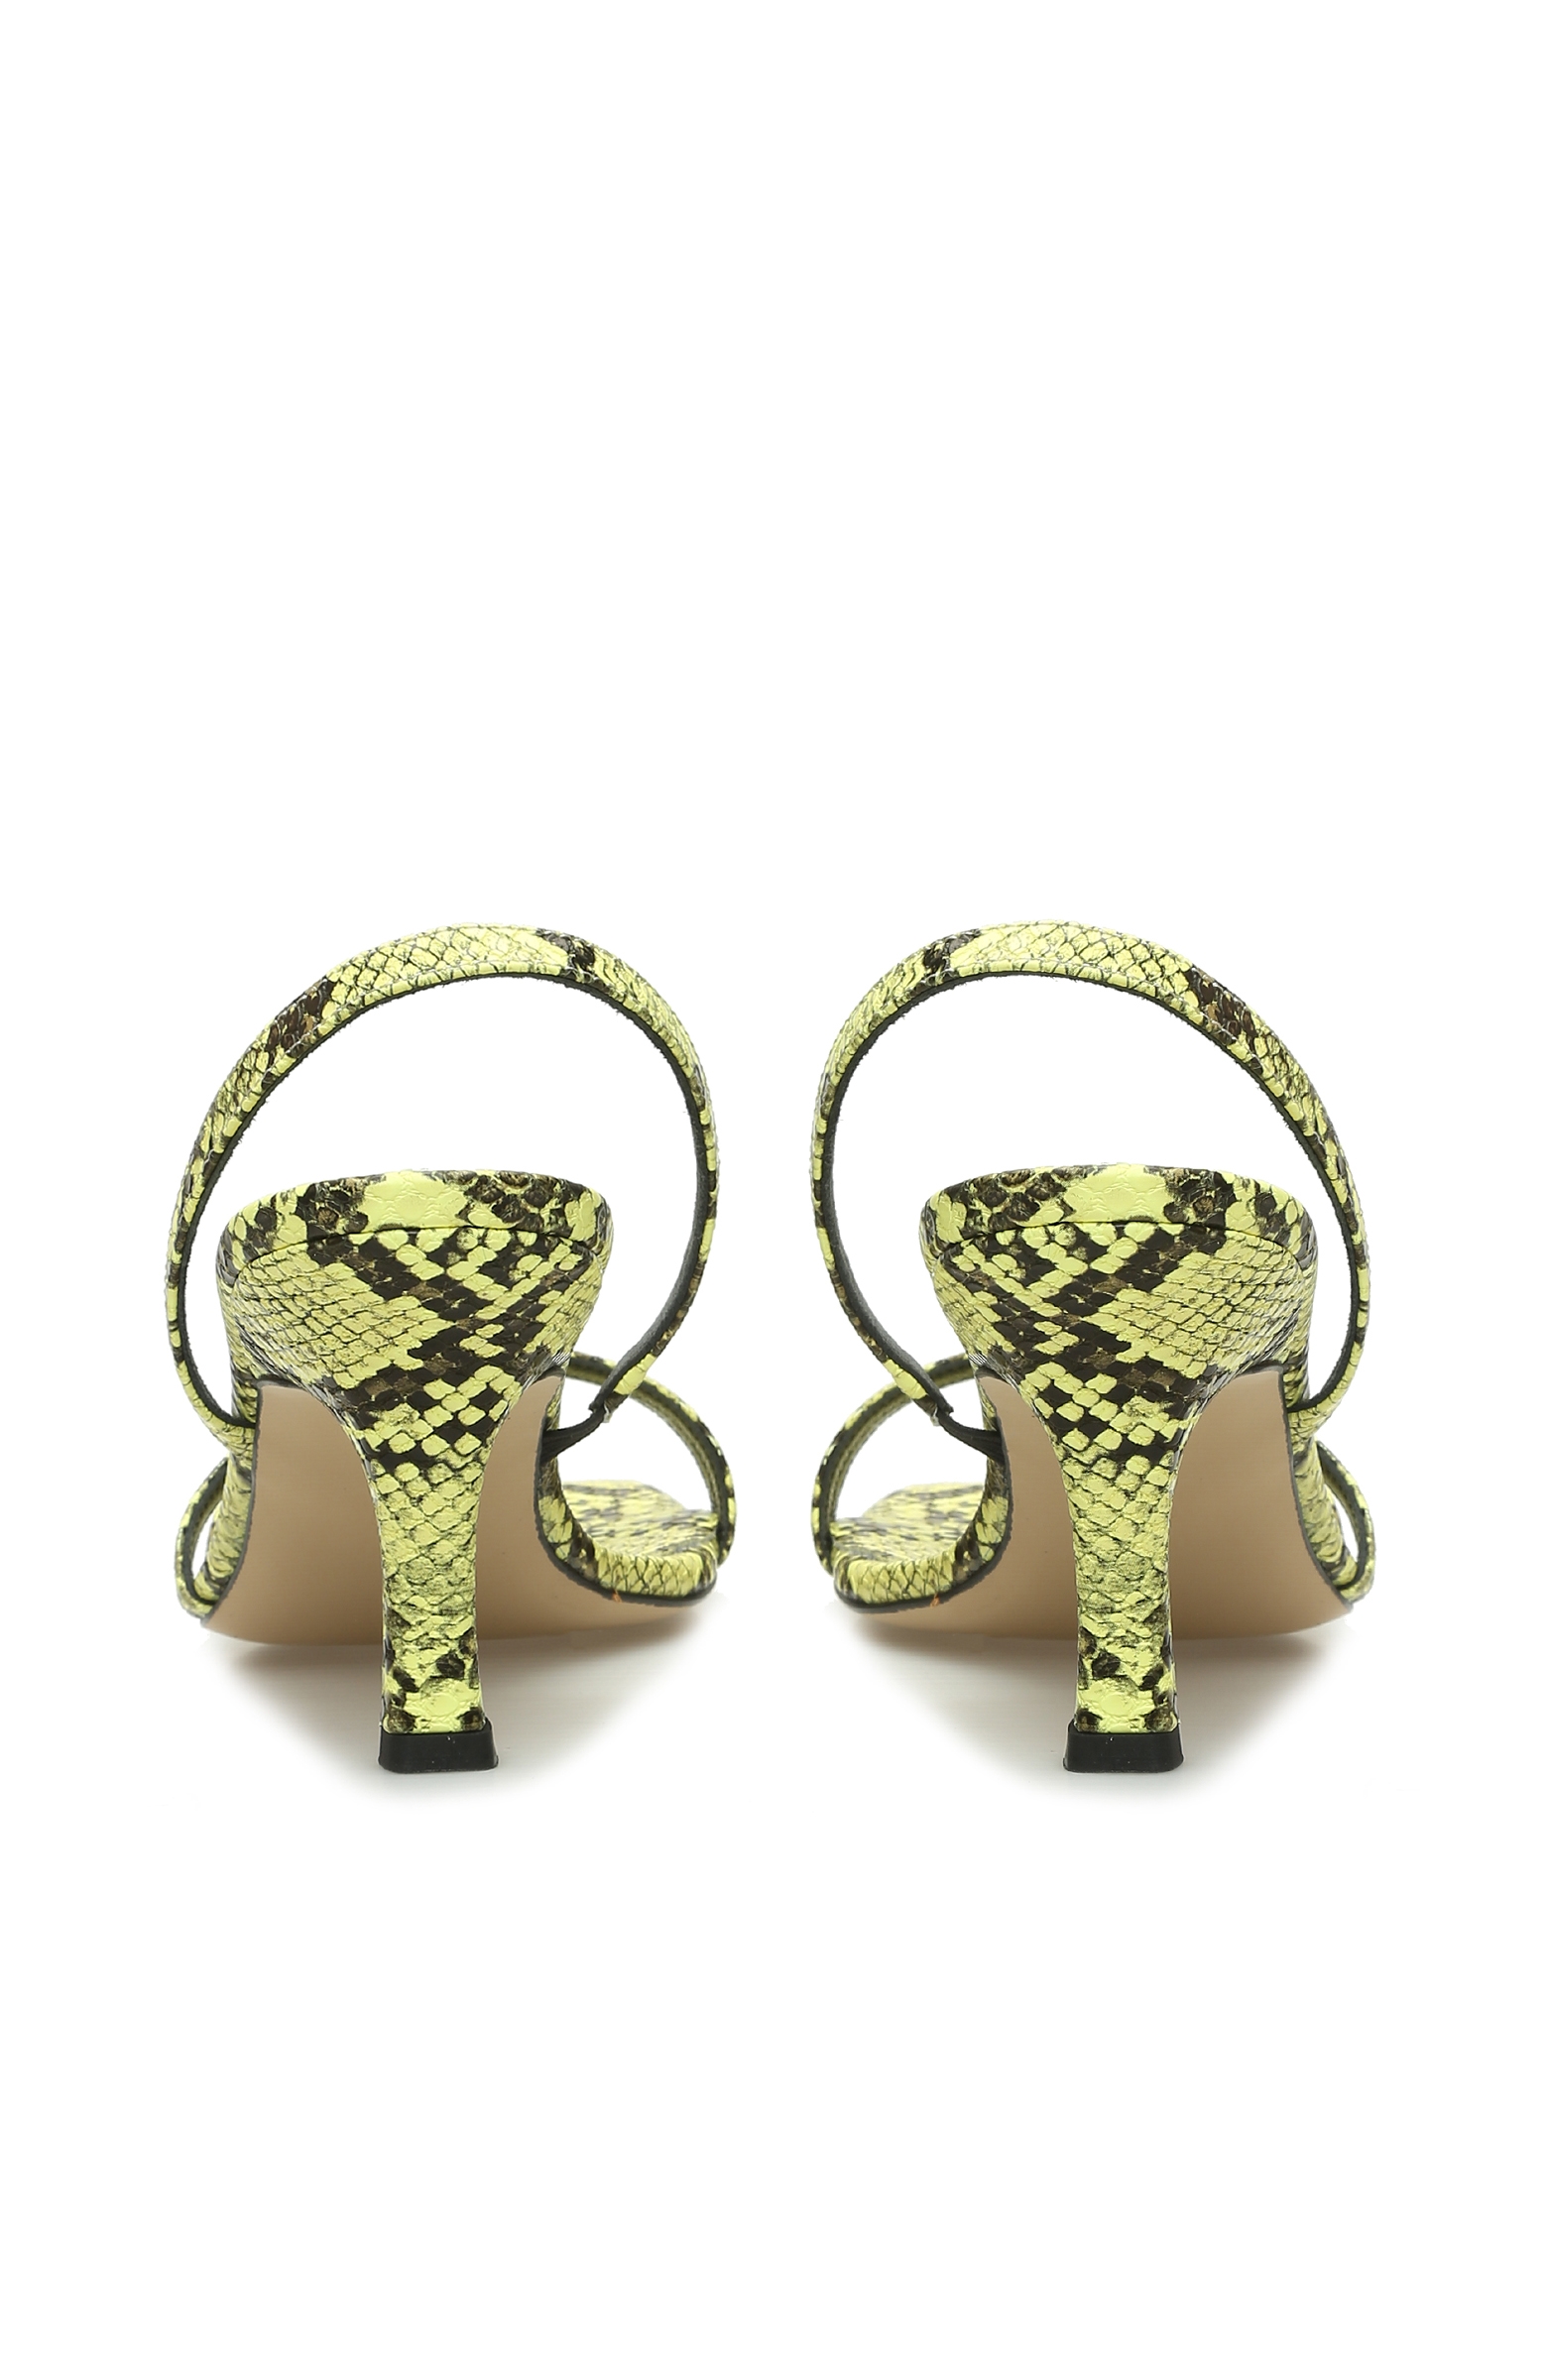 Yeşil Yılan Derisi Desenli Kadın Sandalet